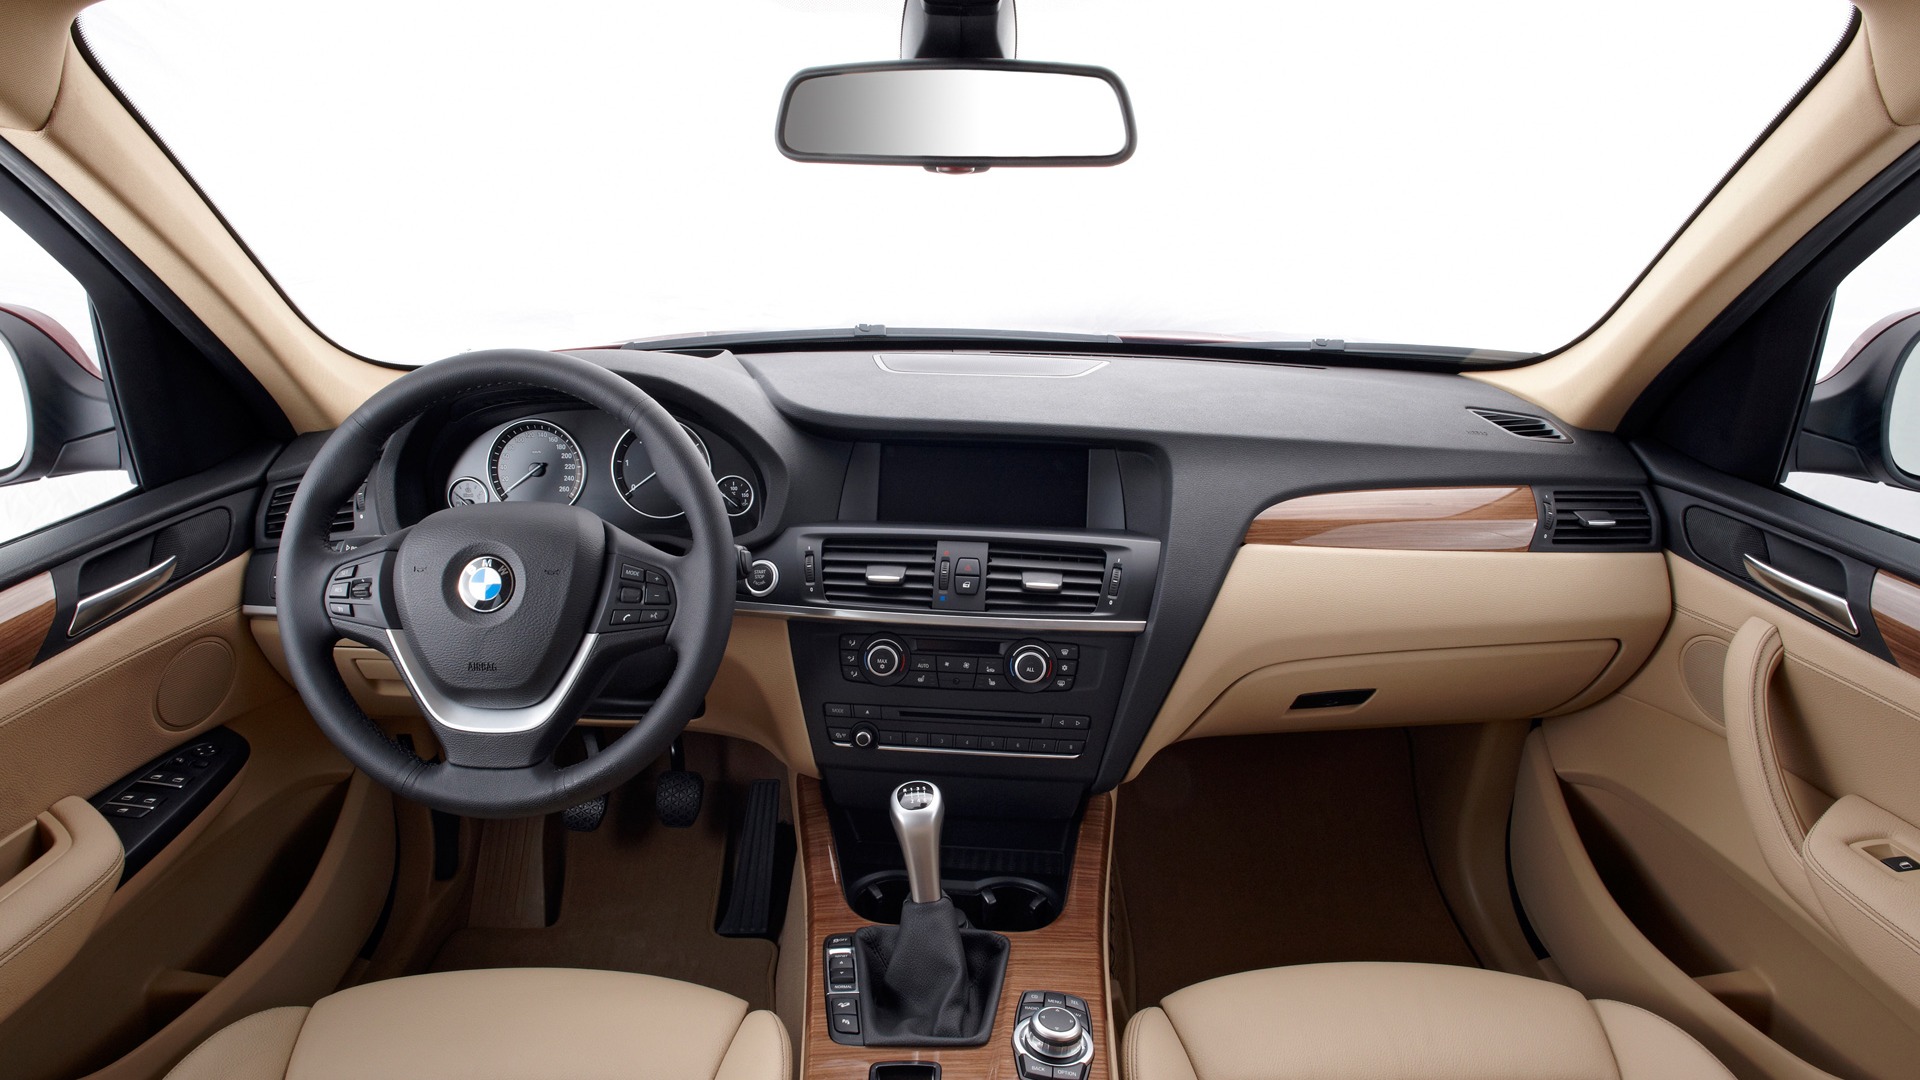 BMW X3 xDrive20d - 2010 (2) #39 - 1920x1080